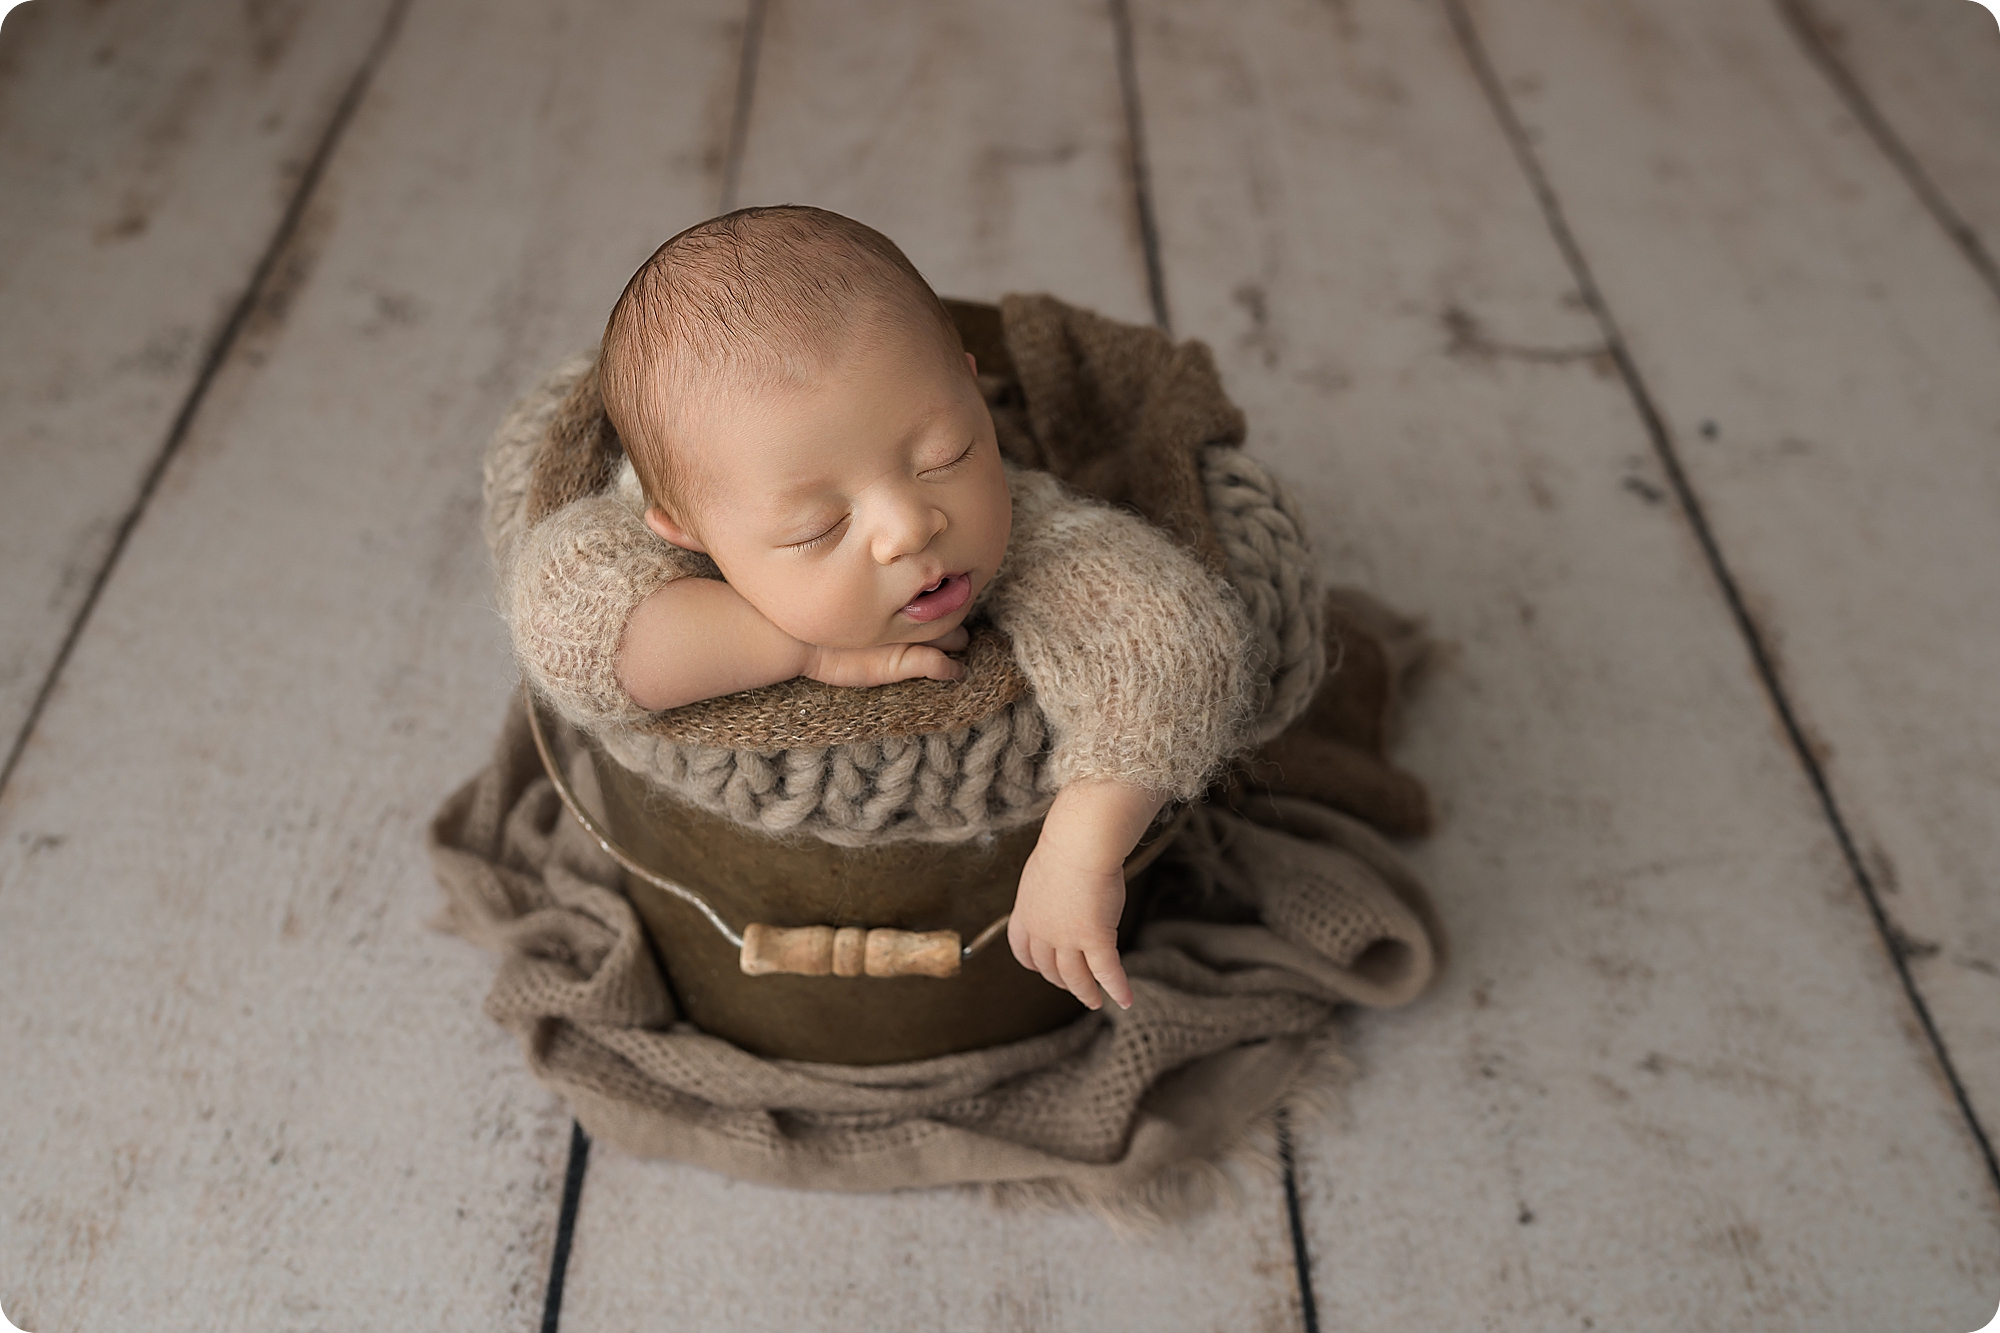 baby sleeps in brown bucket during newborn photos in studio